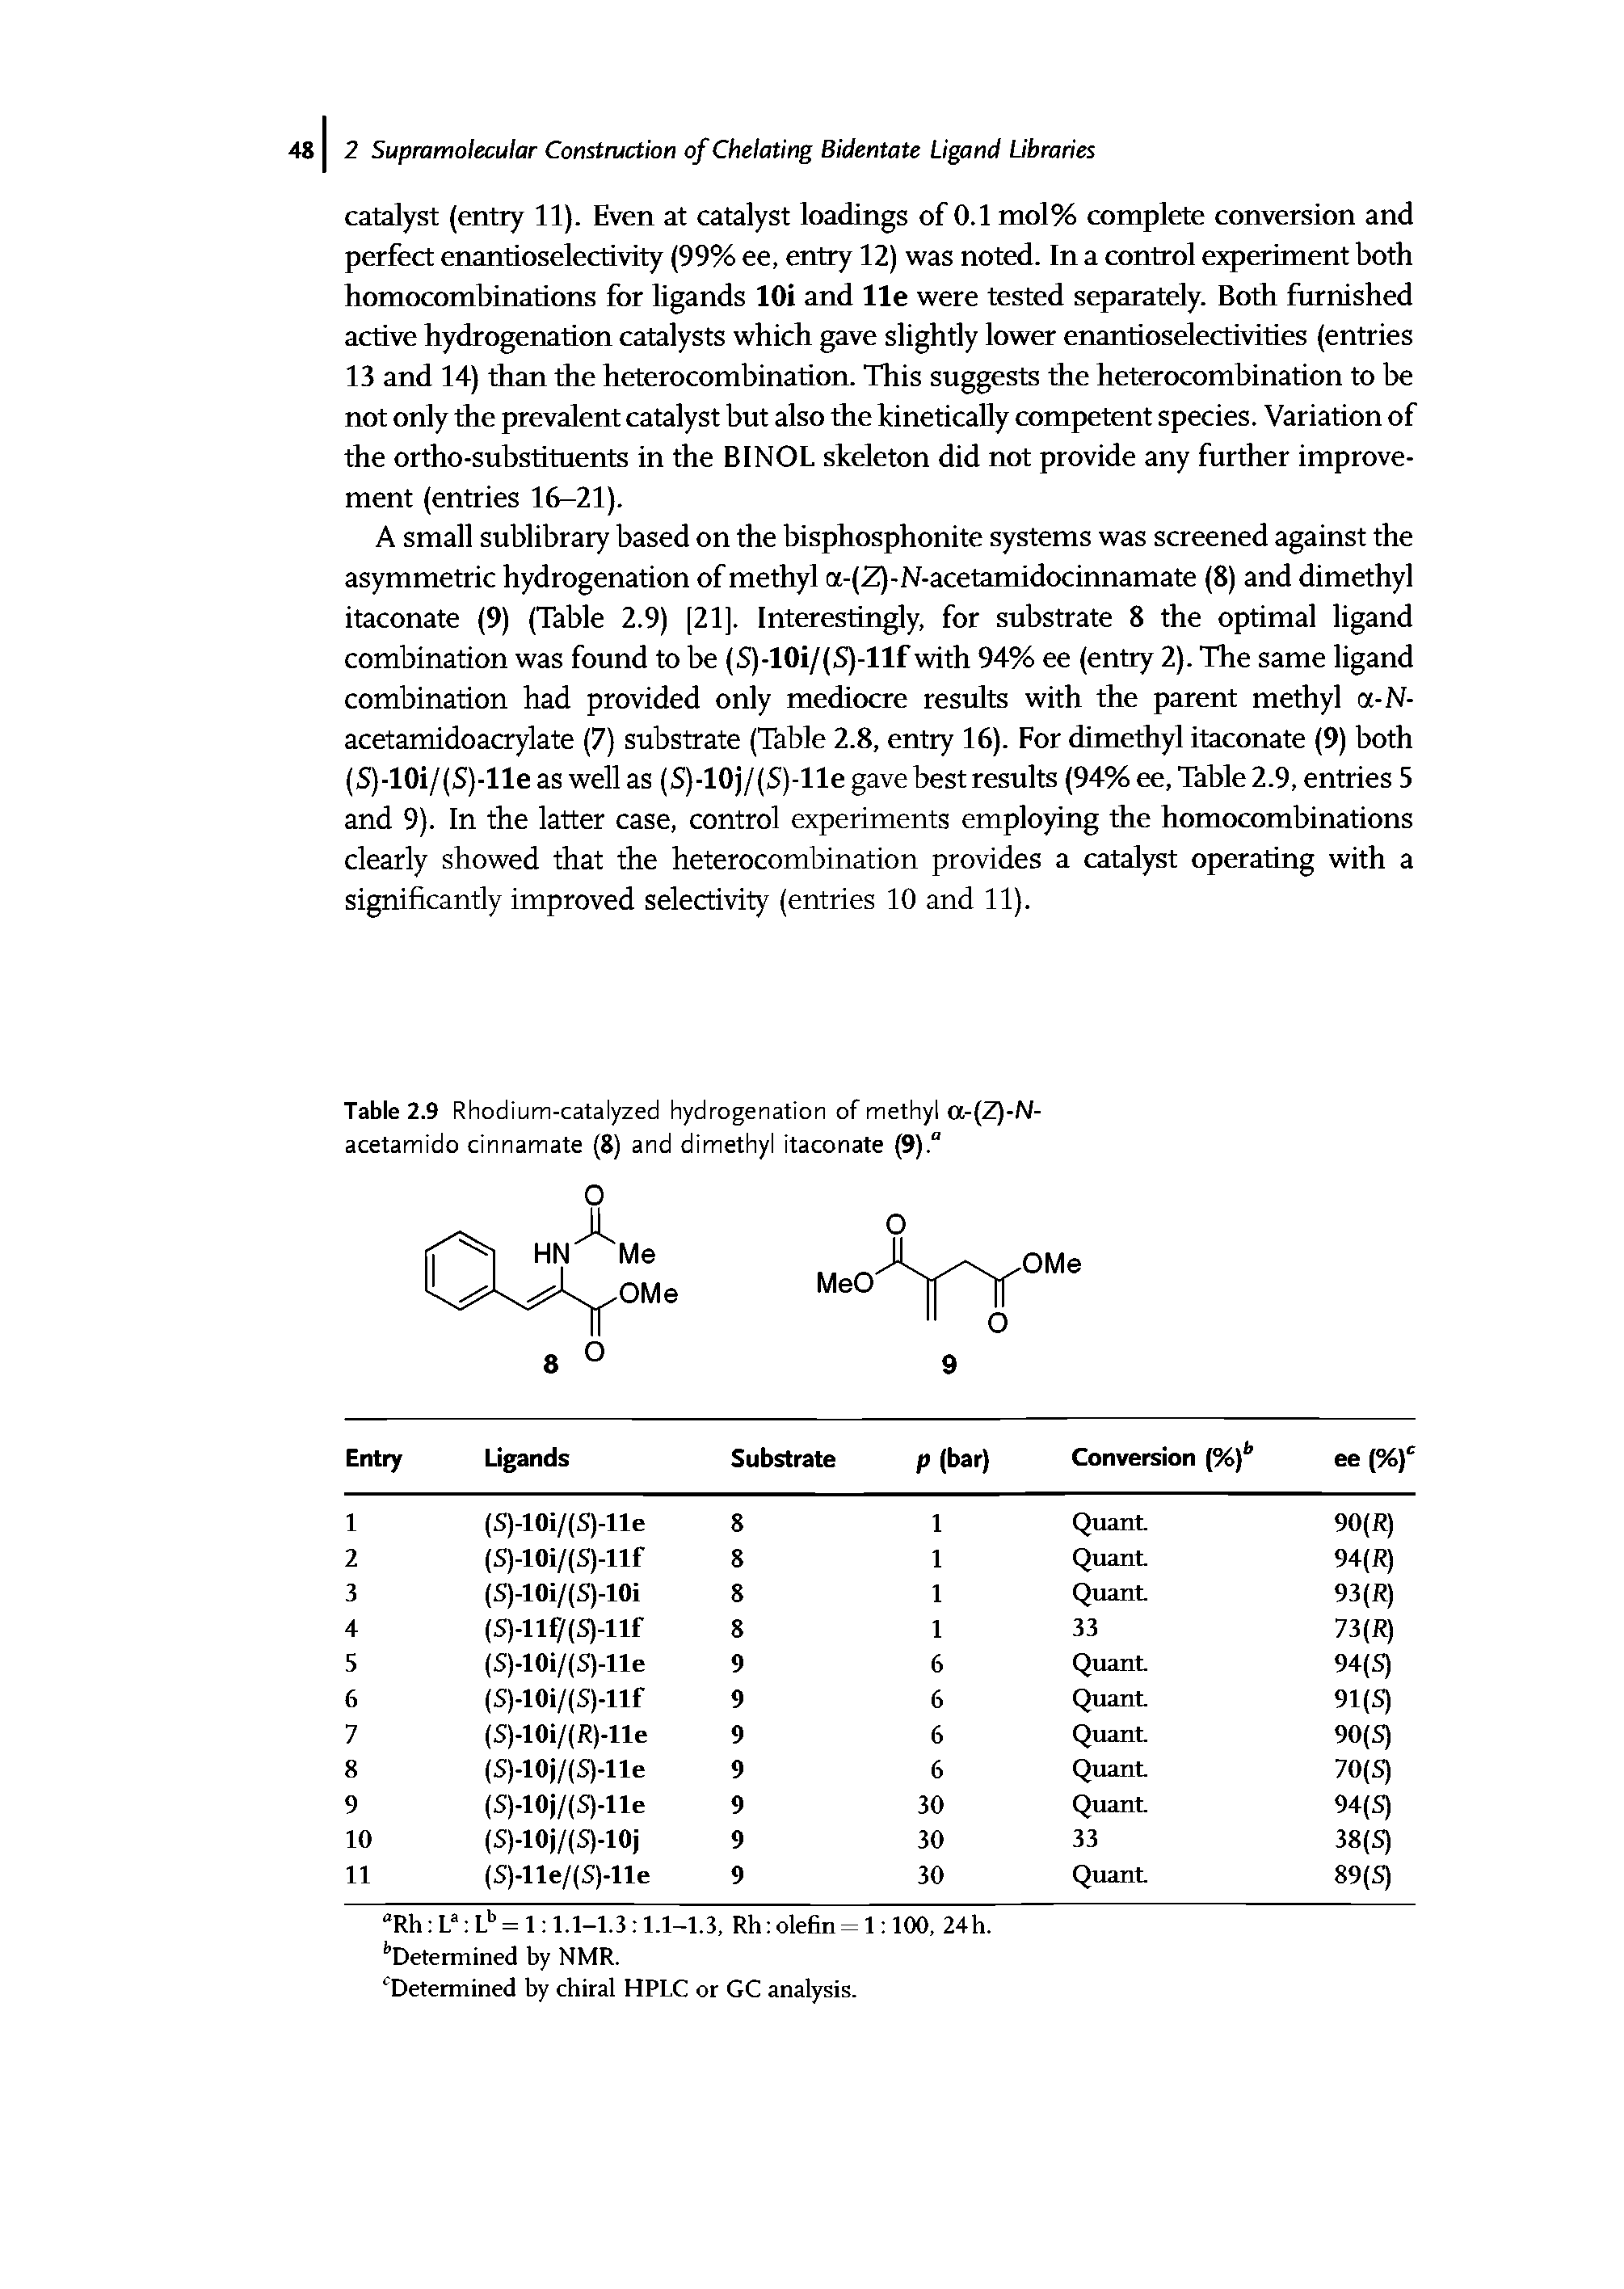 Table 2.9 Rhodium-catalyzed hydrogenation of methyl a-(Z)-N-acetamido cinnamate (8) and dimethyl itaconate (9). ...